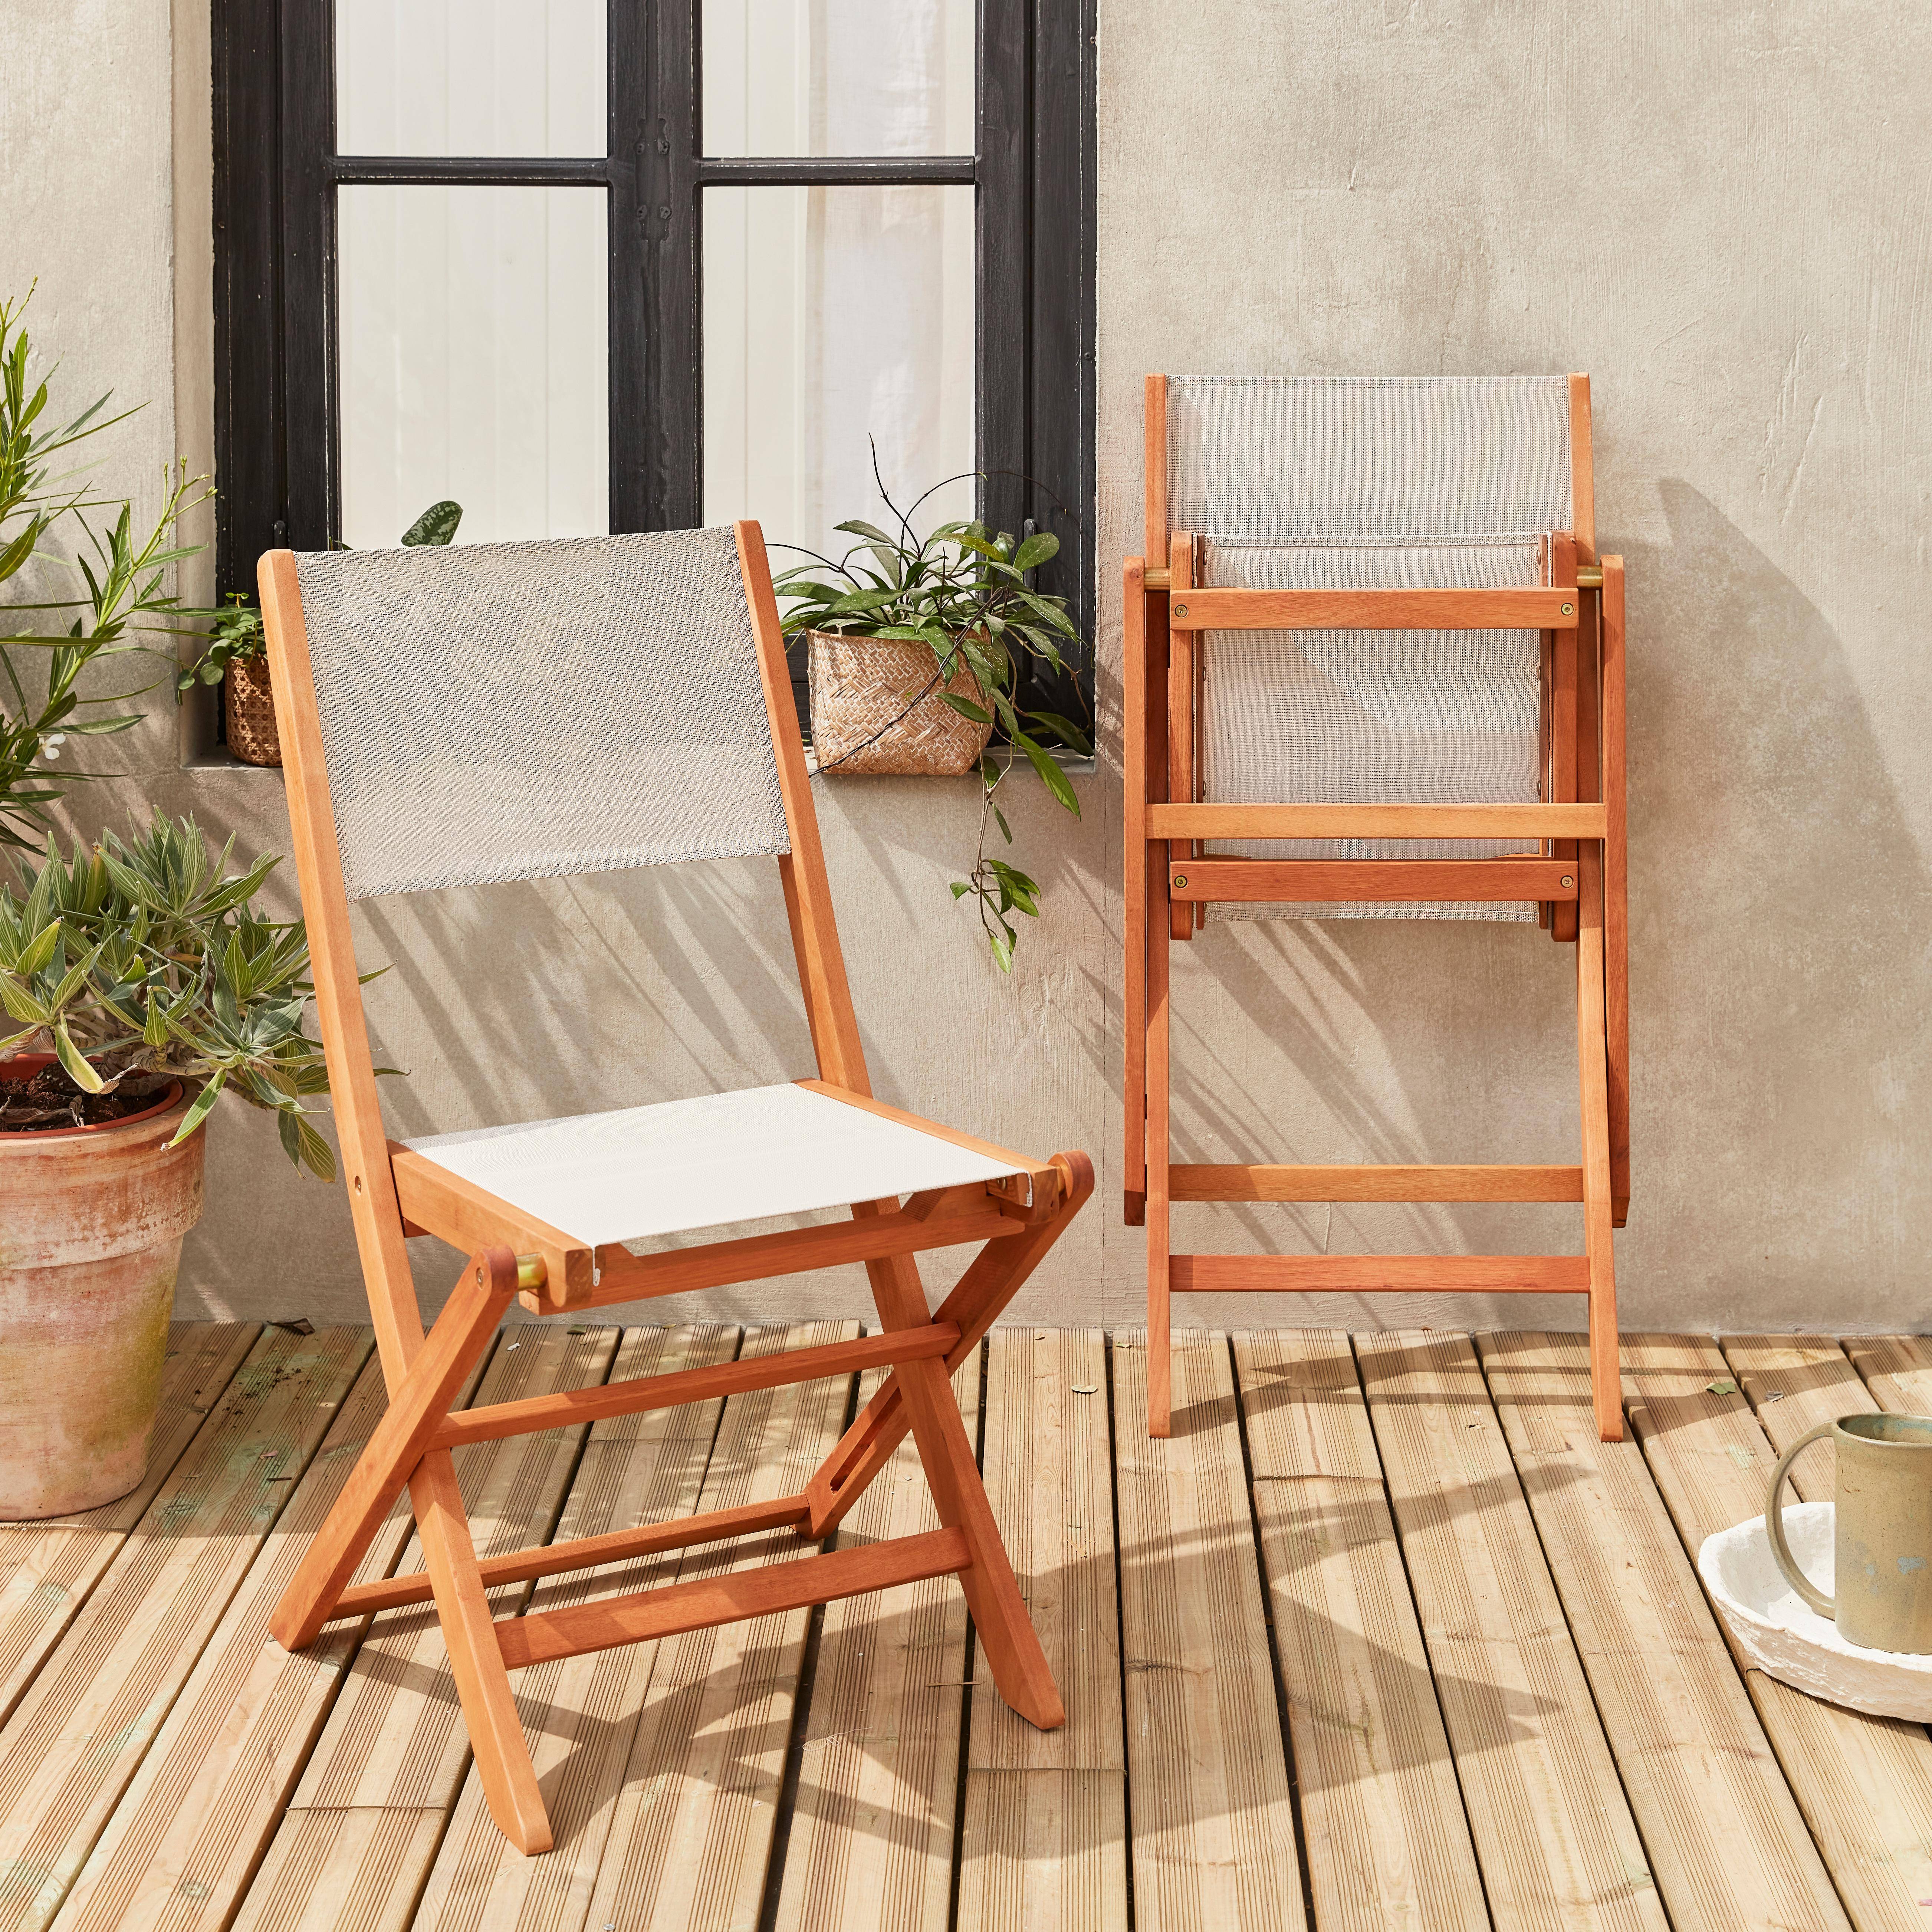 Lotto di 2 sedie da giardino in legno, modello: Almeria, 2 sedie pieghevoli,  in eucalipto FSC, colore: Bianco